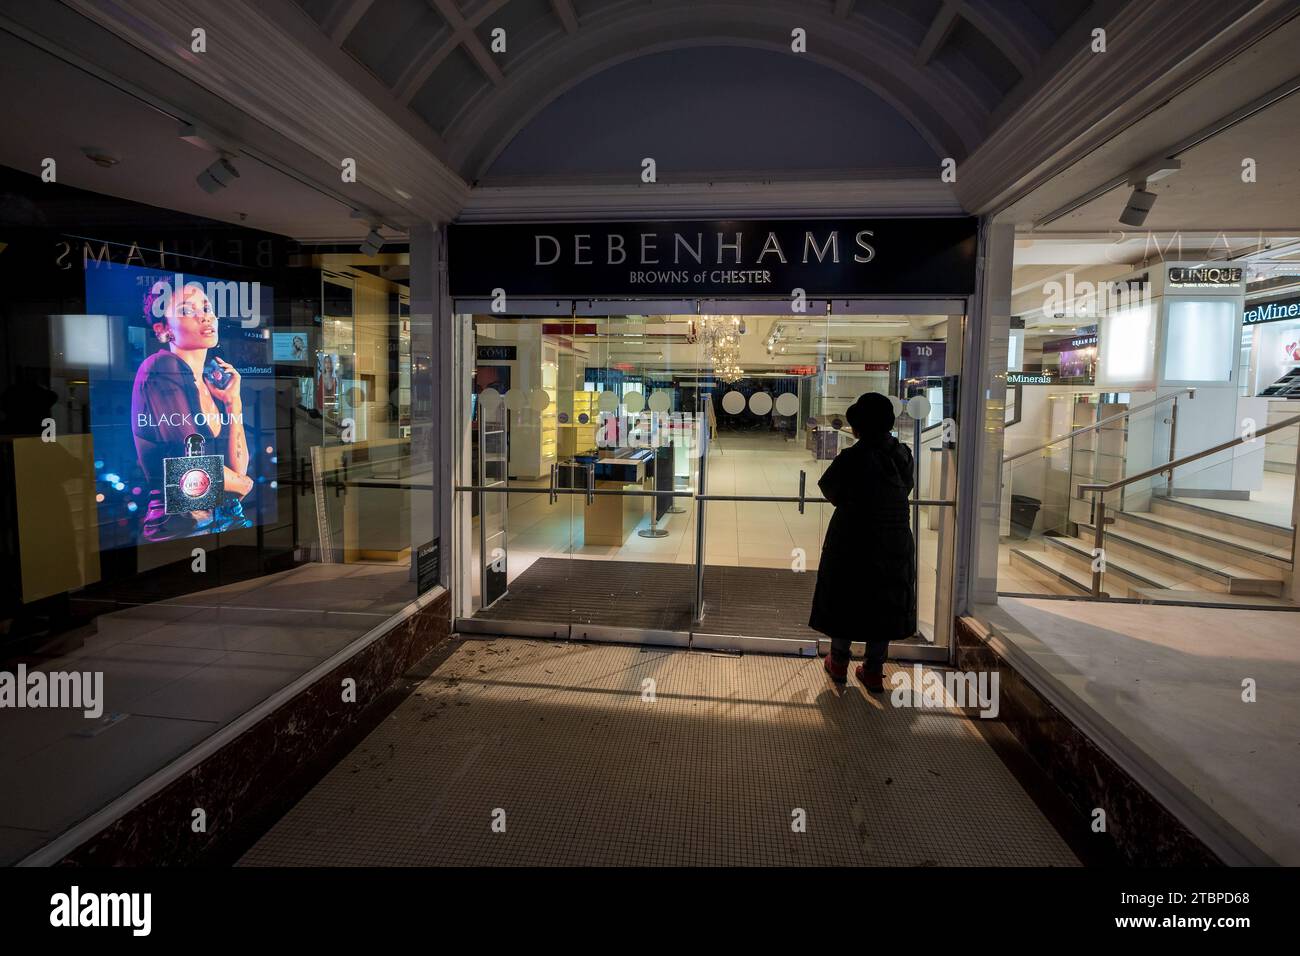 Le grand magasin Debenhams fermé Browns de Chester dans les rangées à l'air désolée. Un indicateur de la crise du Retail causée par la pandémie de Covid. Banque D'Images